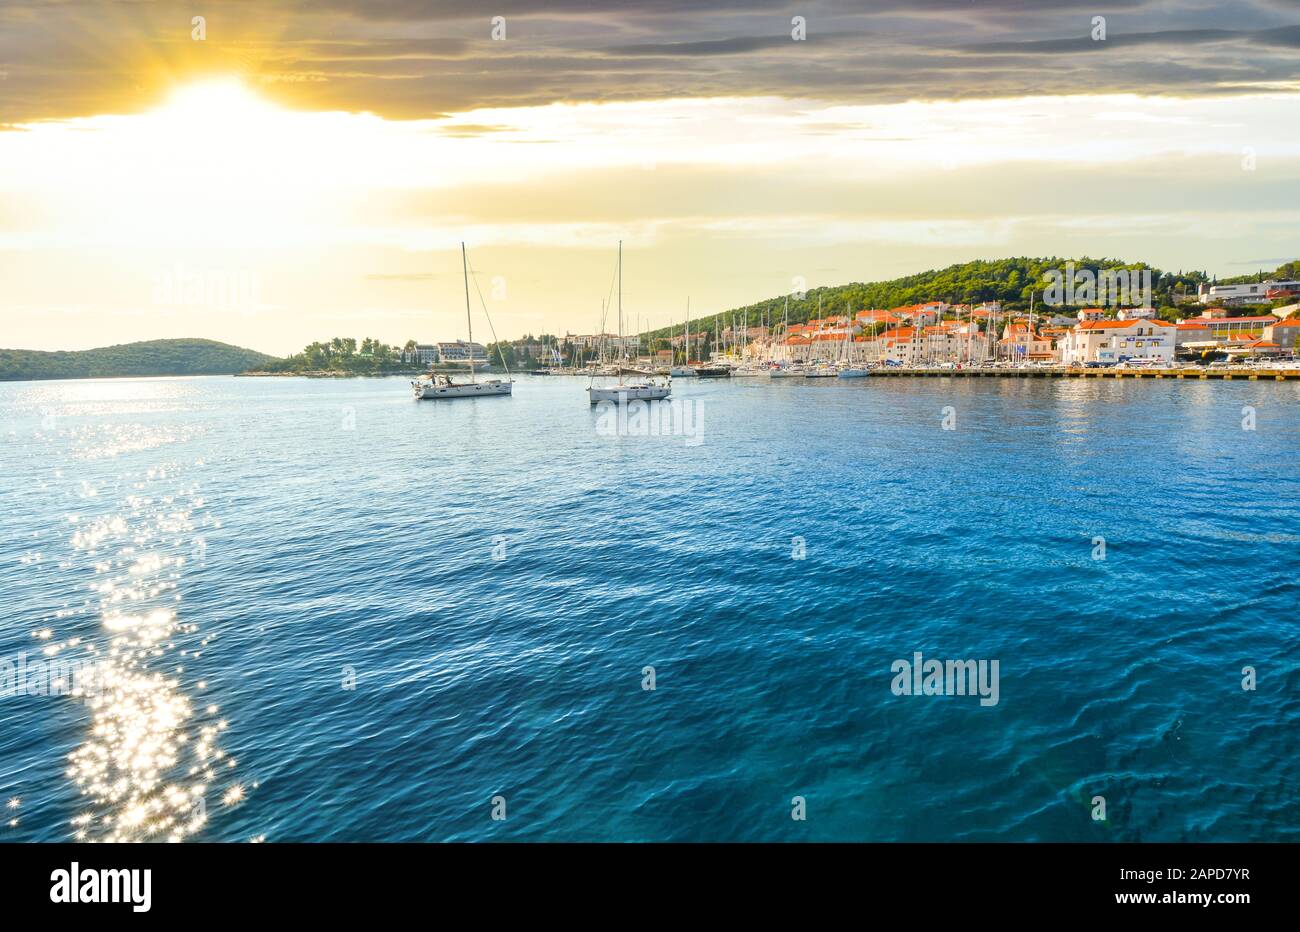 Ein kleines Dorf, das Meer und die Inseln in der Nähe von Korculat und Dubrovnik an der Dalmatinischen Küste Kroatiens am späten Nachmittag vom Boot aus Stockfoto